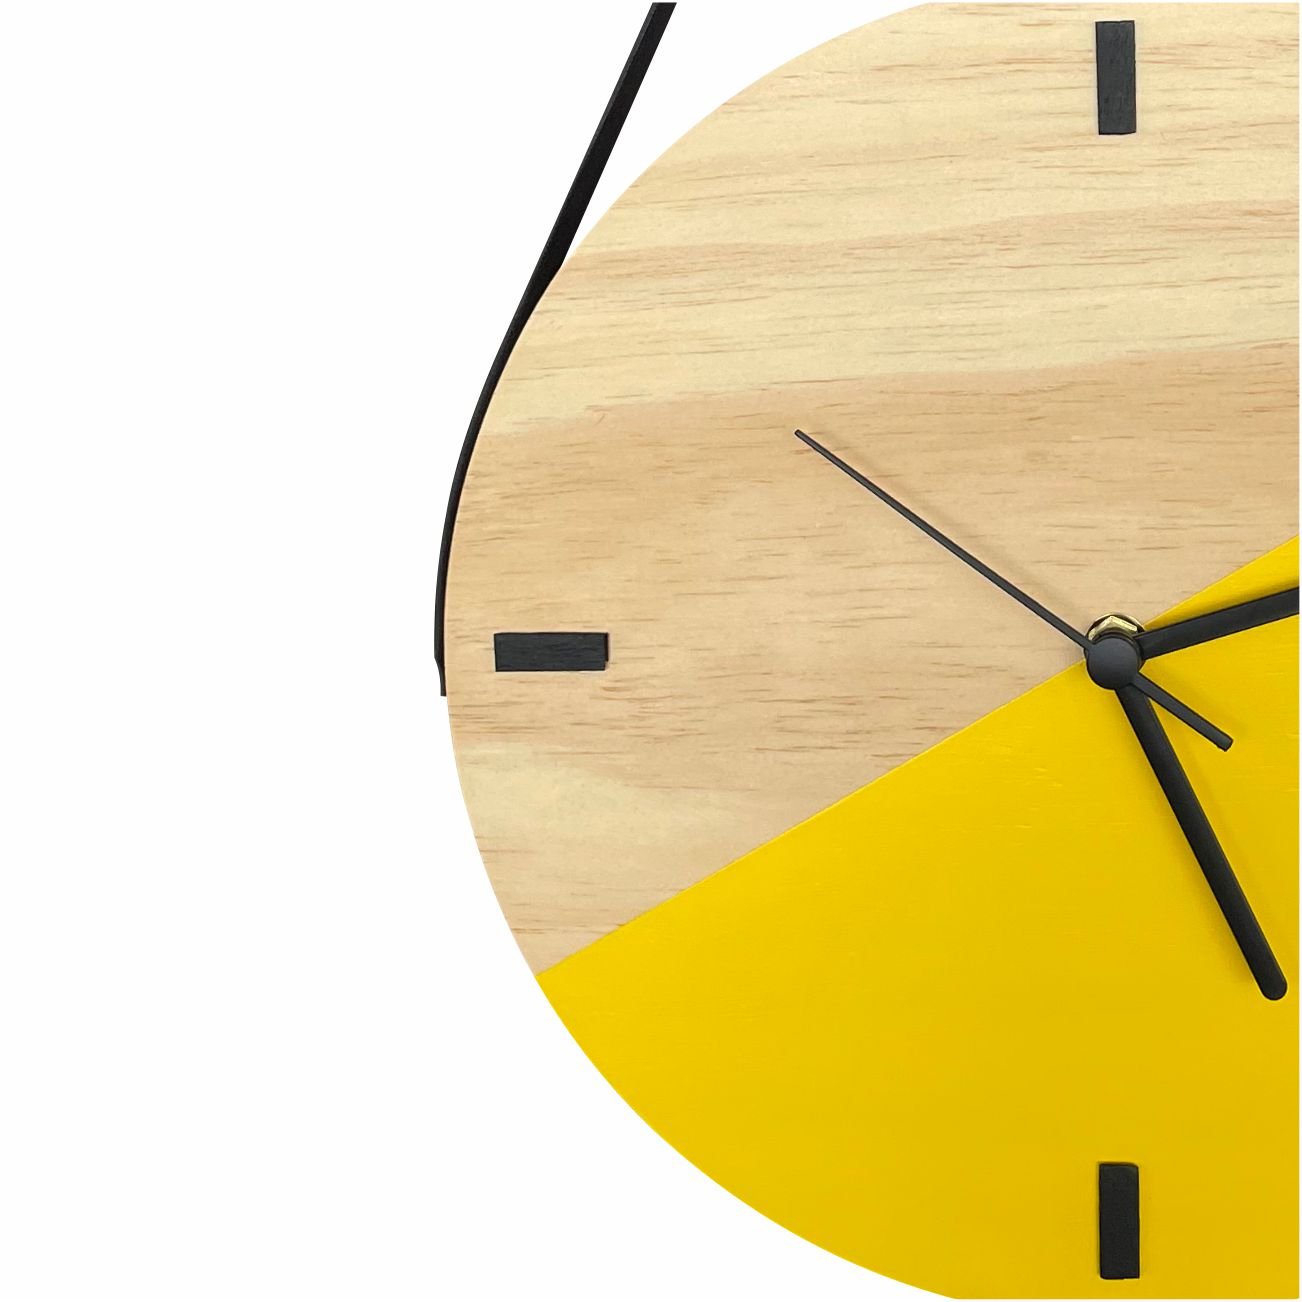 Relógio Decorativo Edward Clock Escandinavo Amarelo com Alça - 2